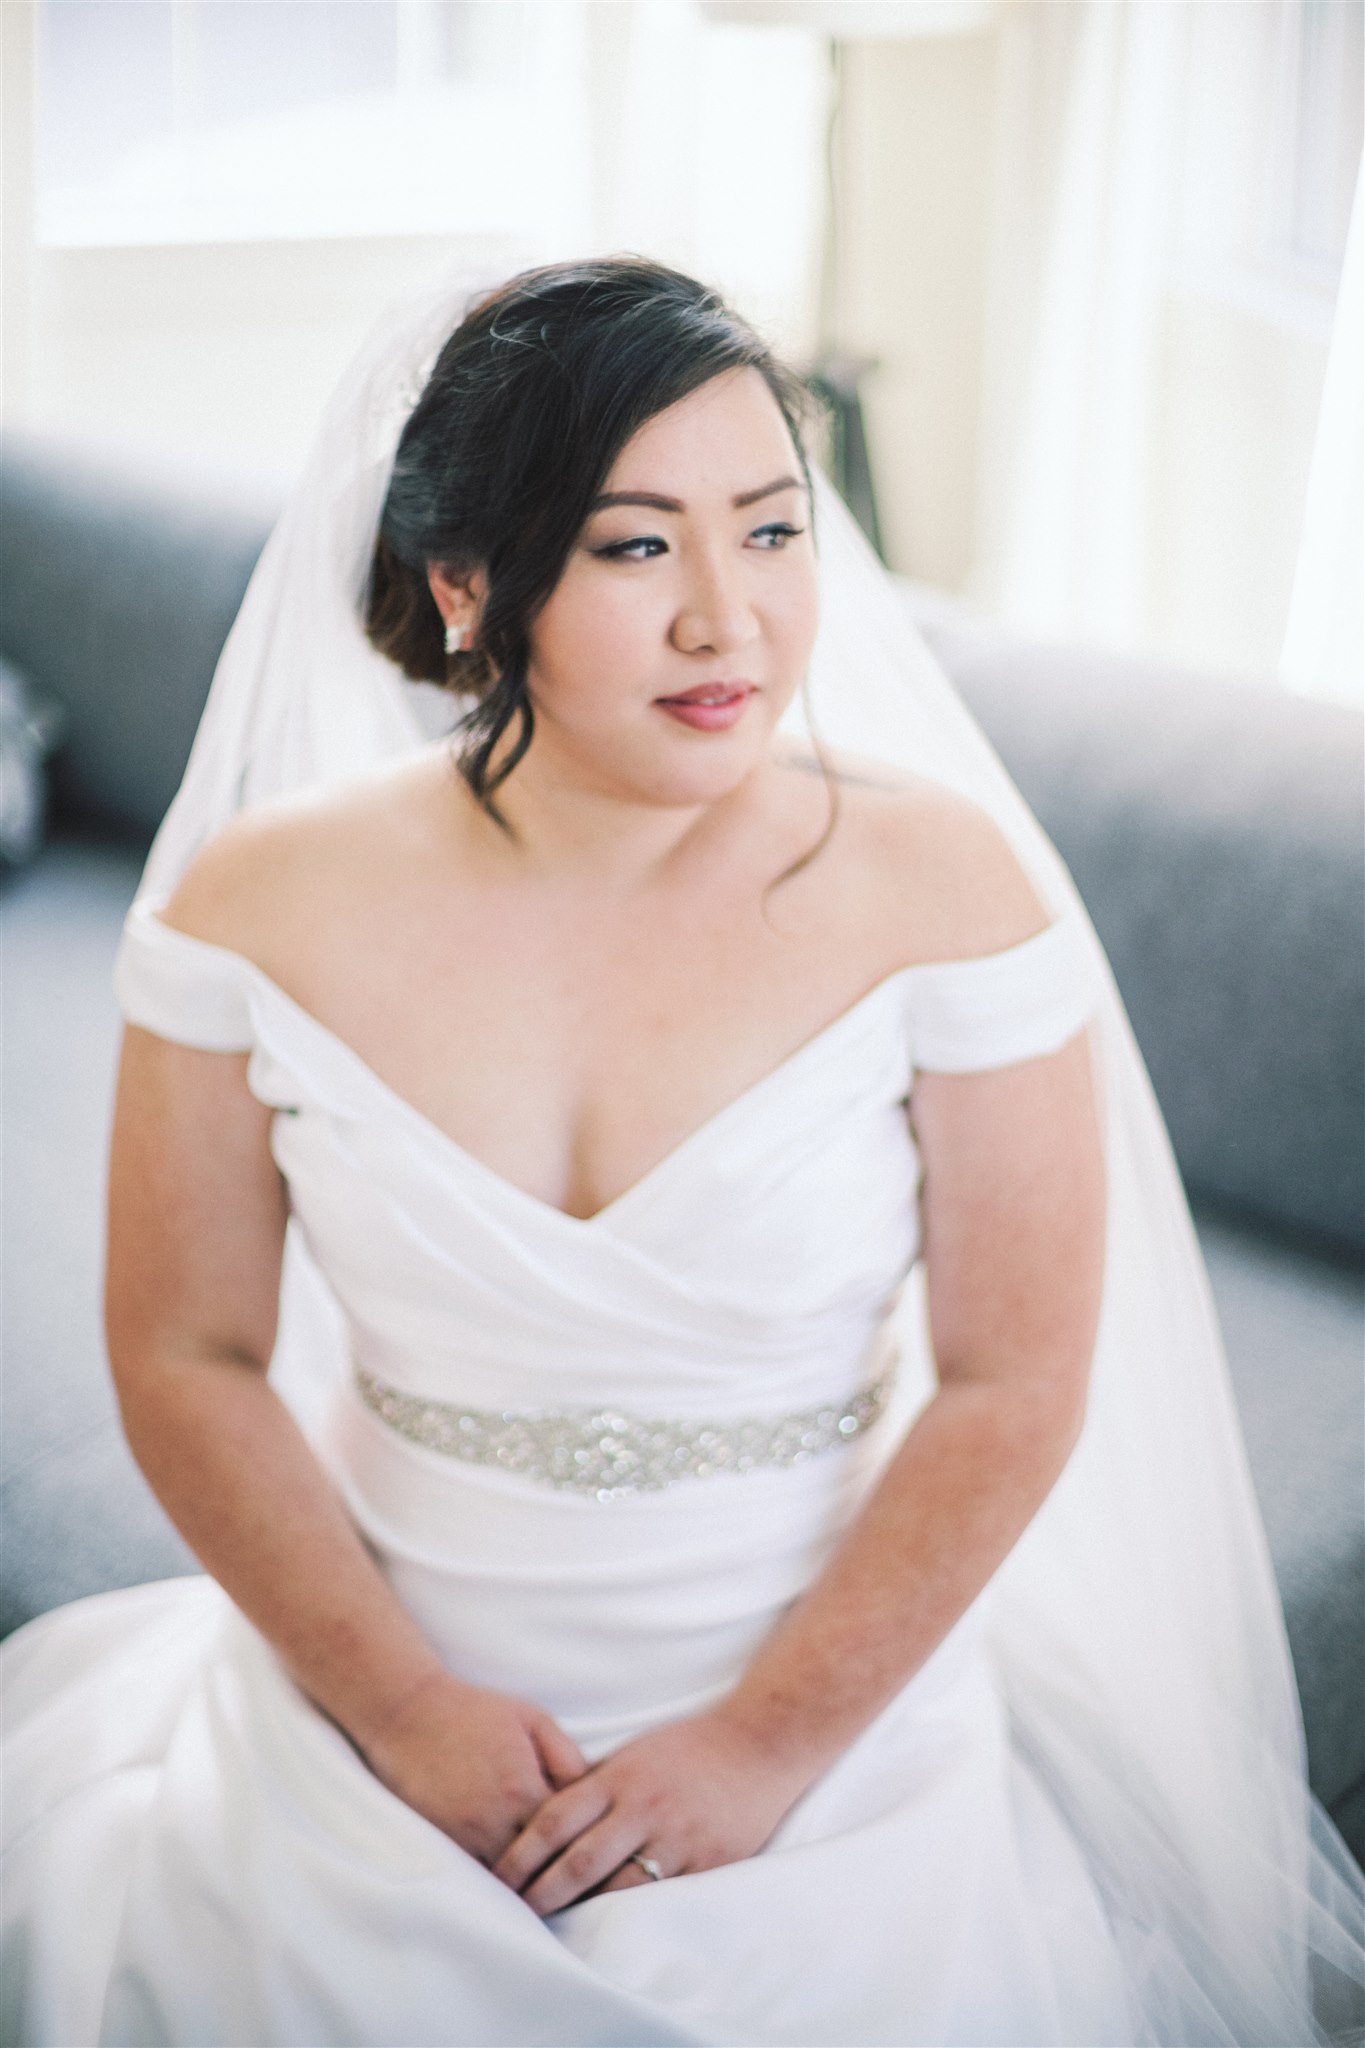 bride sits during classic portrait